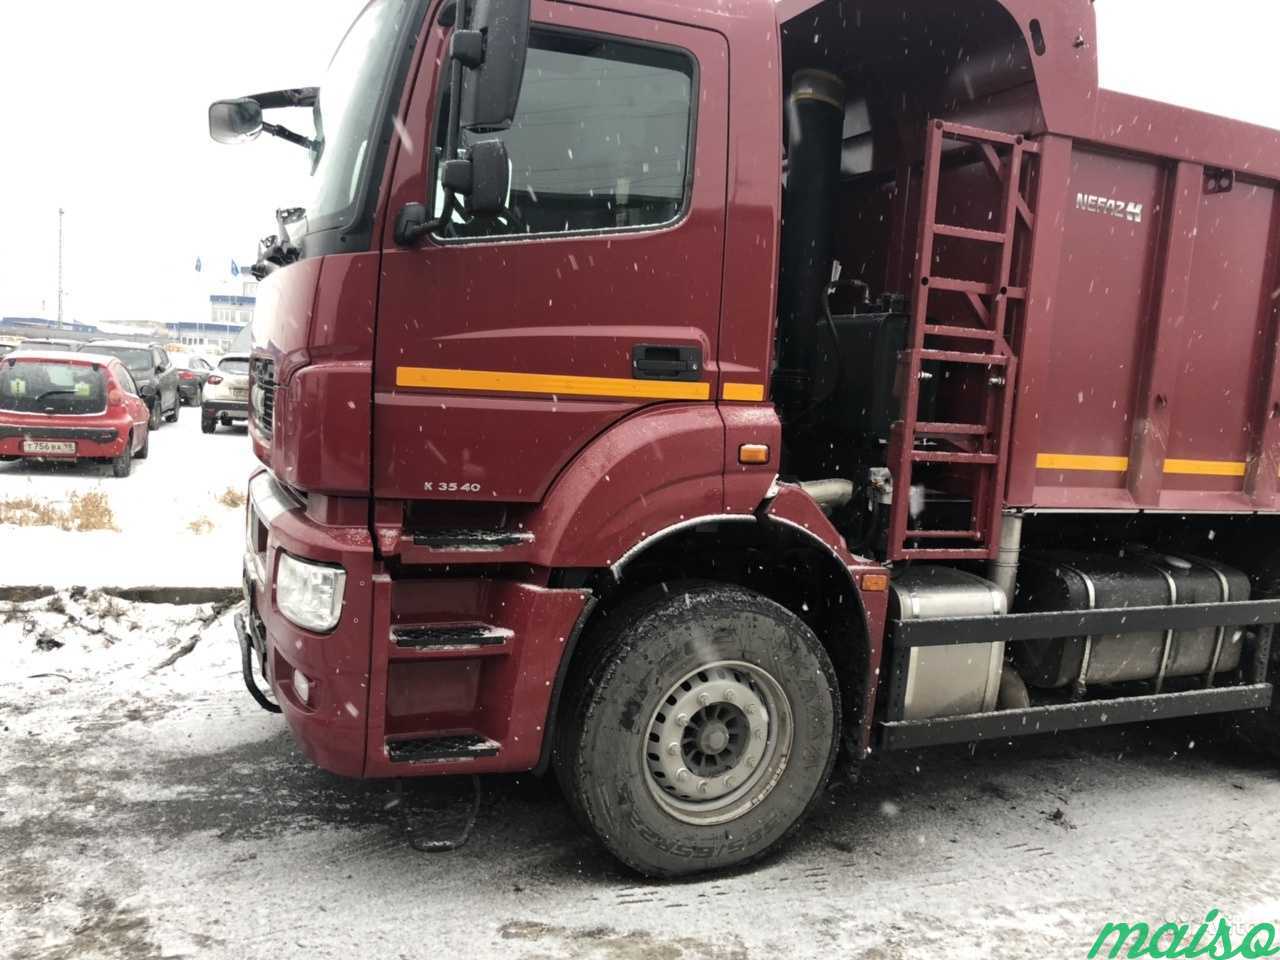 Аренда грузового авто грузовой технике самосвала в Санкт-Петербурге. Фото 3